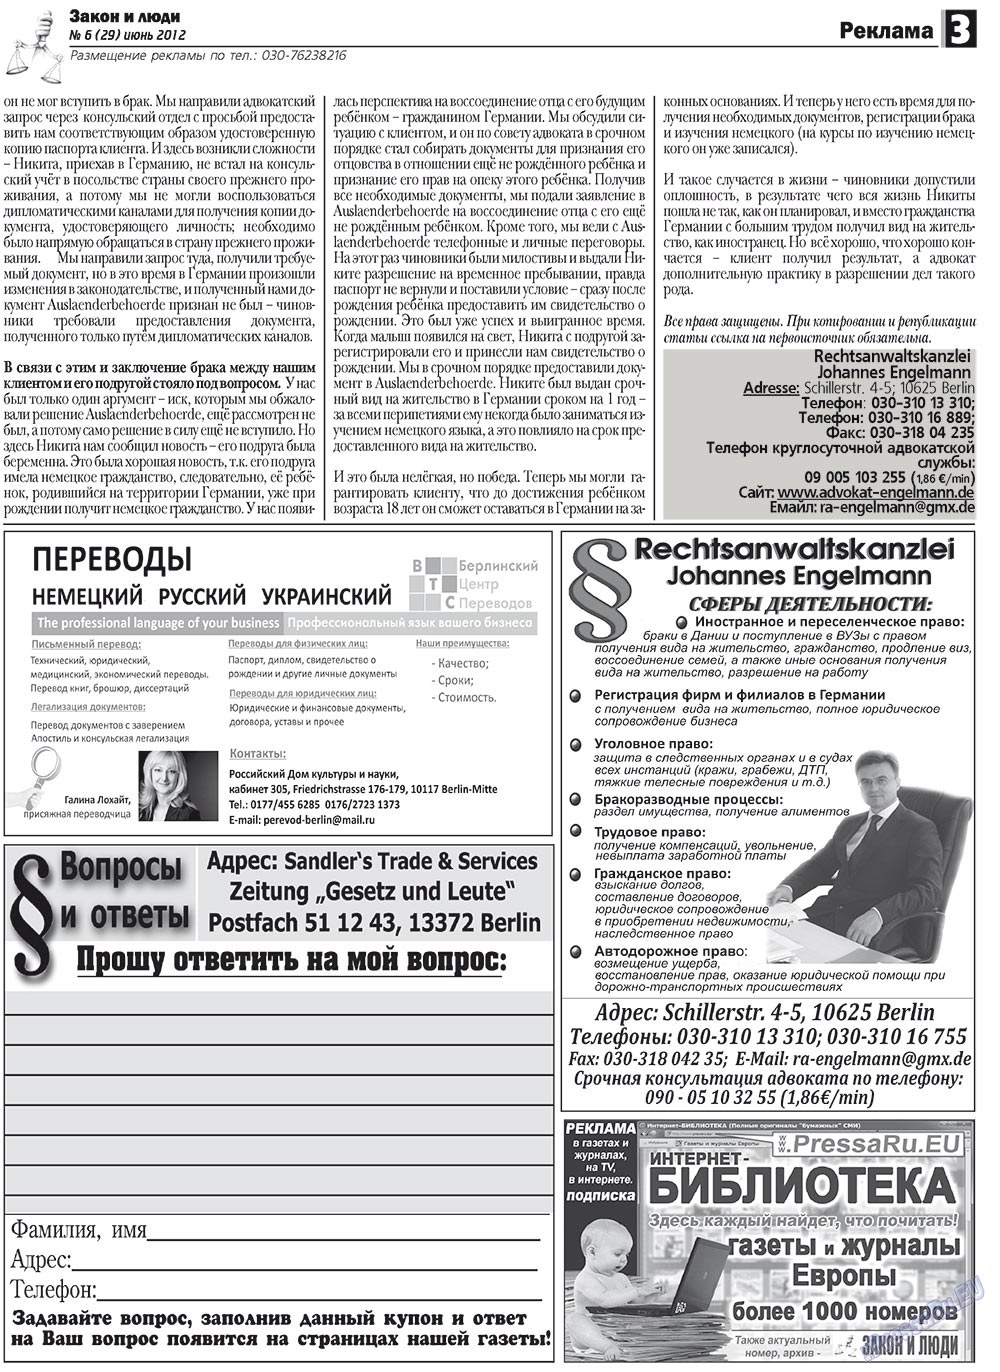 Закон и люди, газета. 2012 №6 стр.3